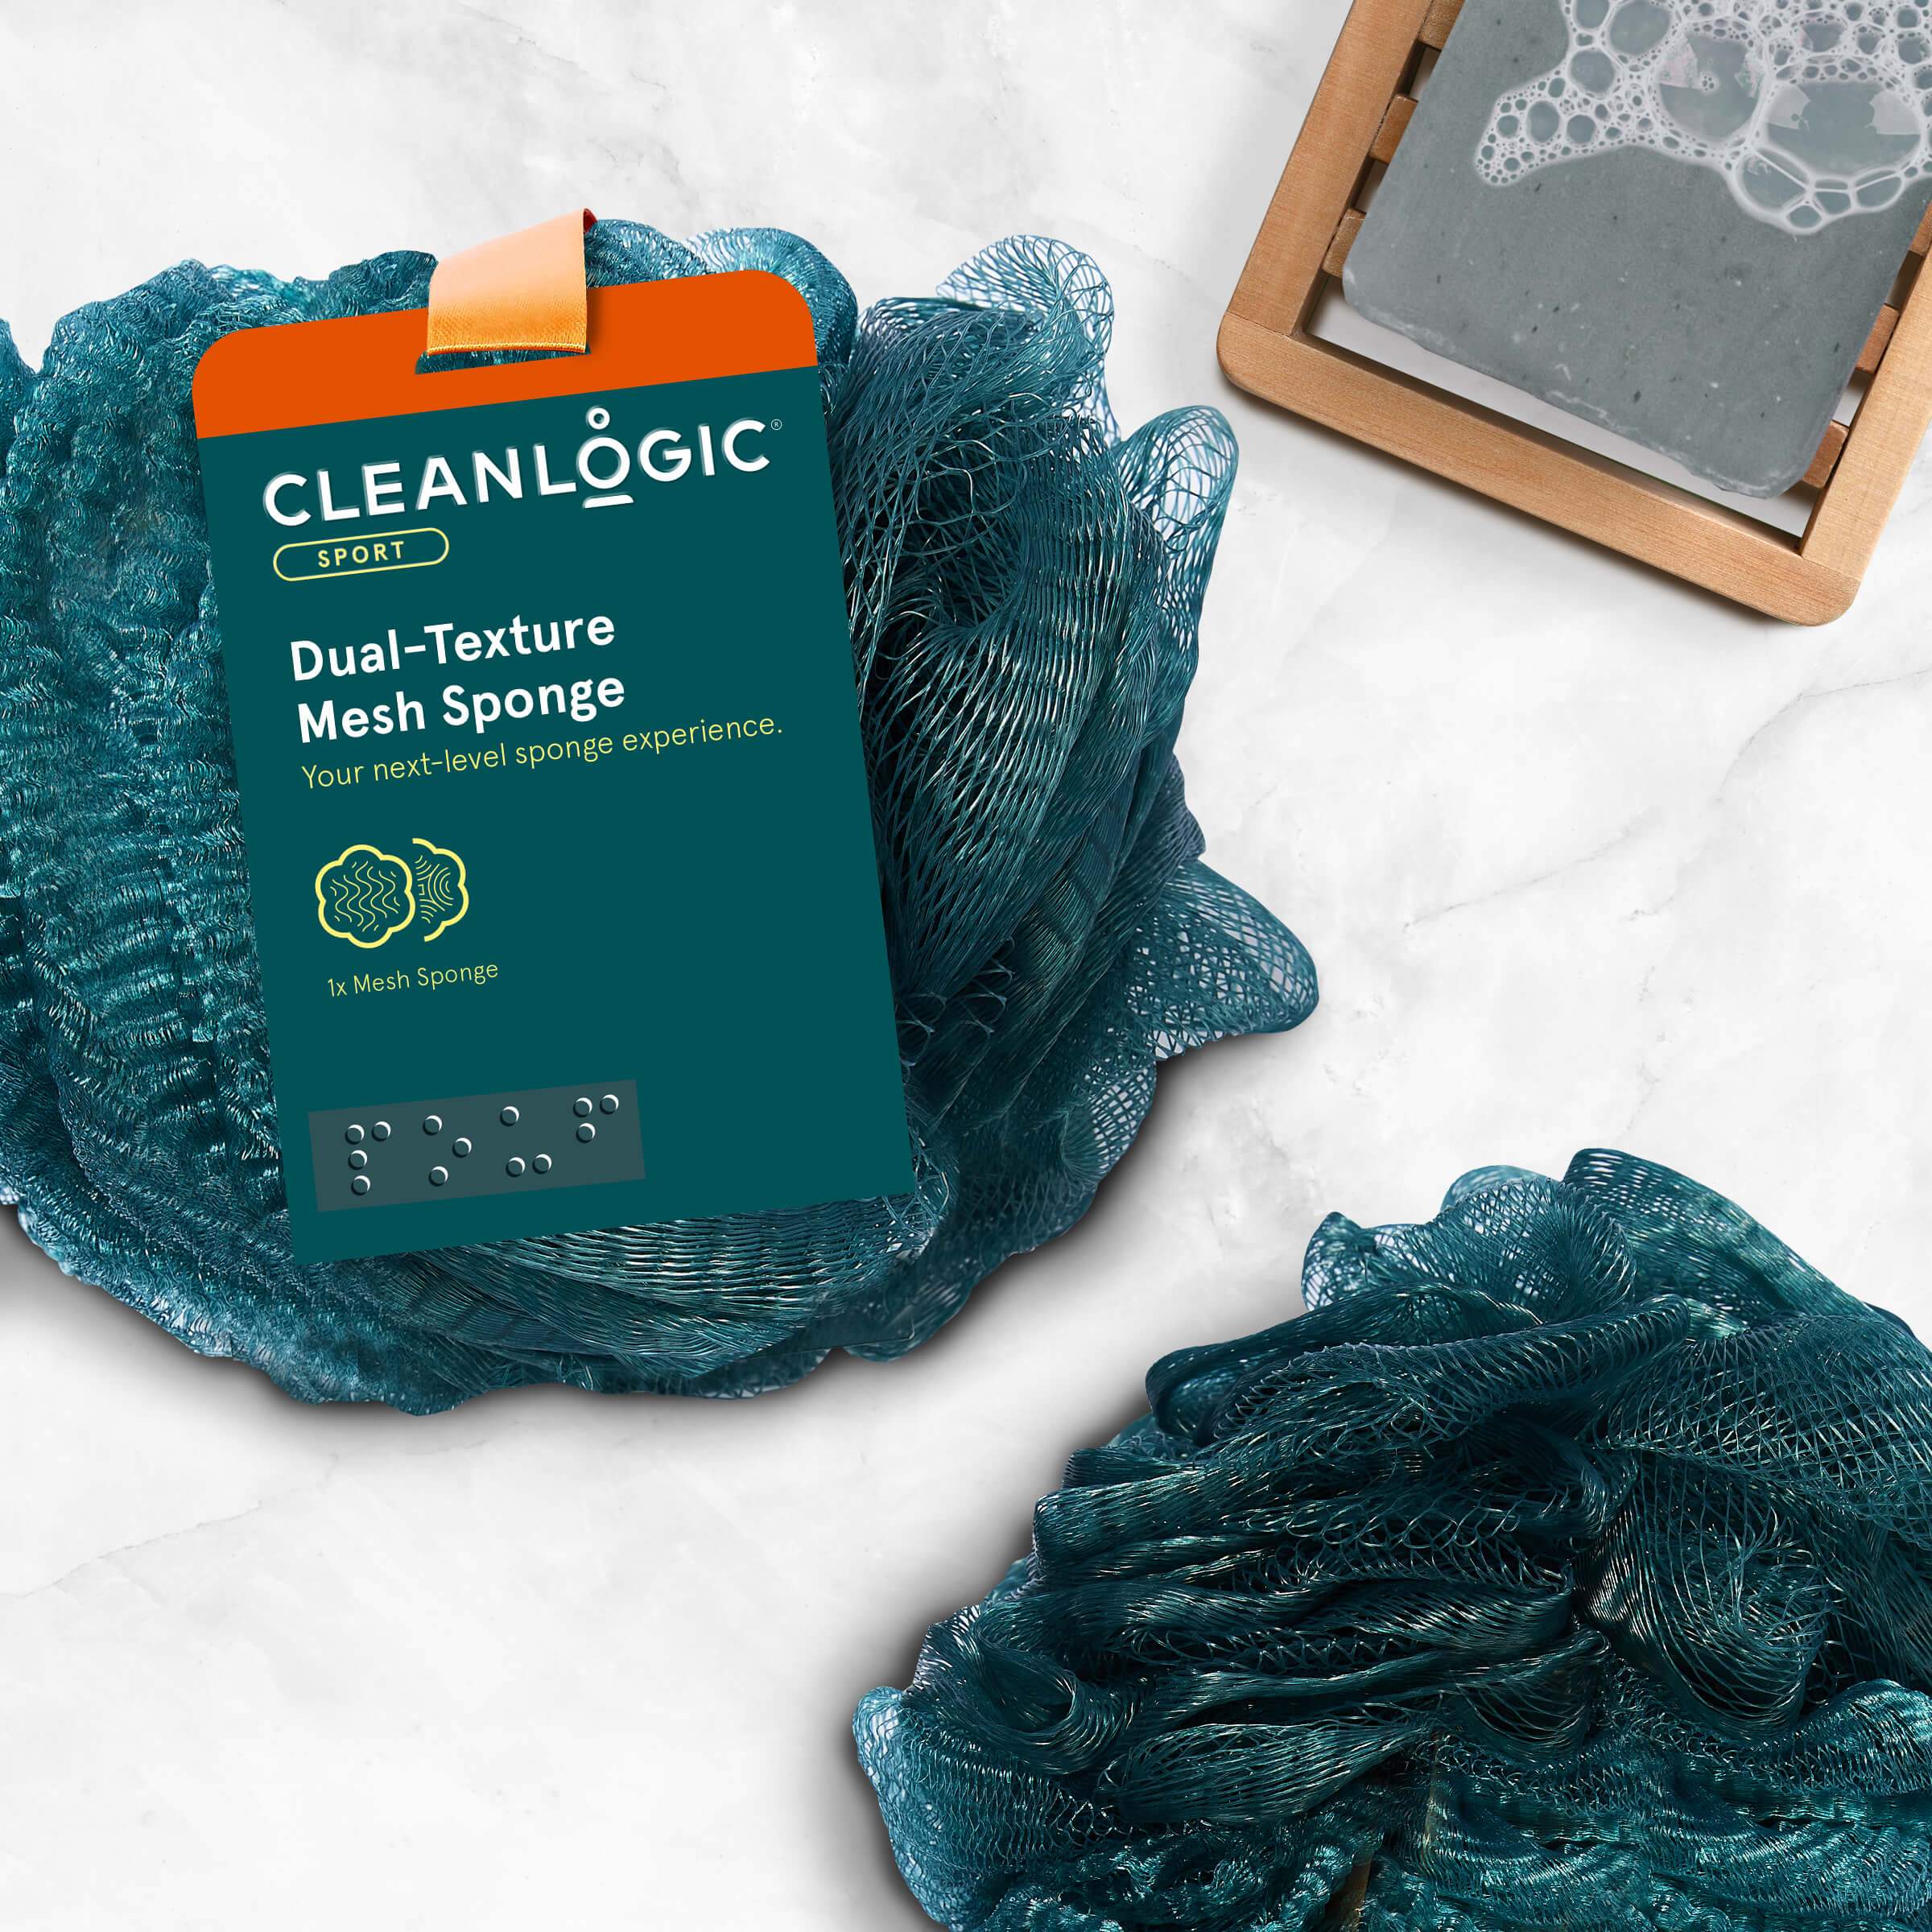 Cleanlogic Sport Dual-Texture Mesh Sponge